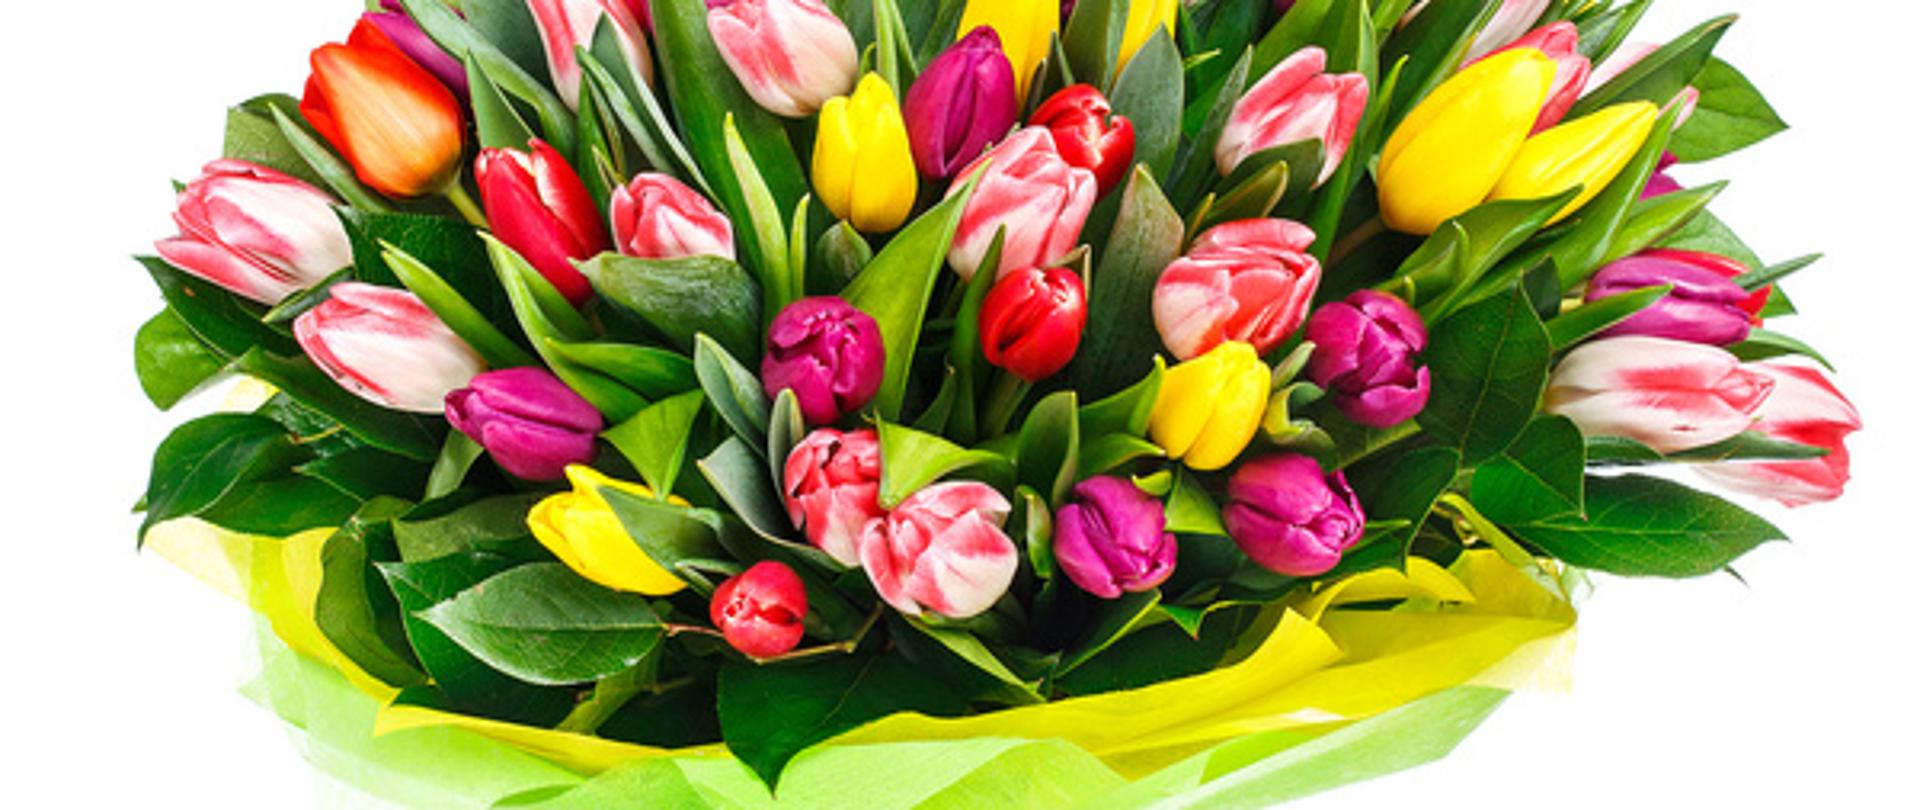 Zdjęcie obrazujące bukiet tulipanów